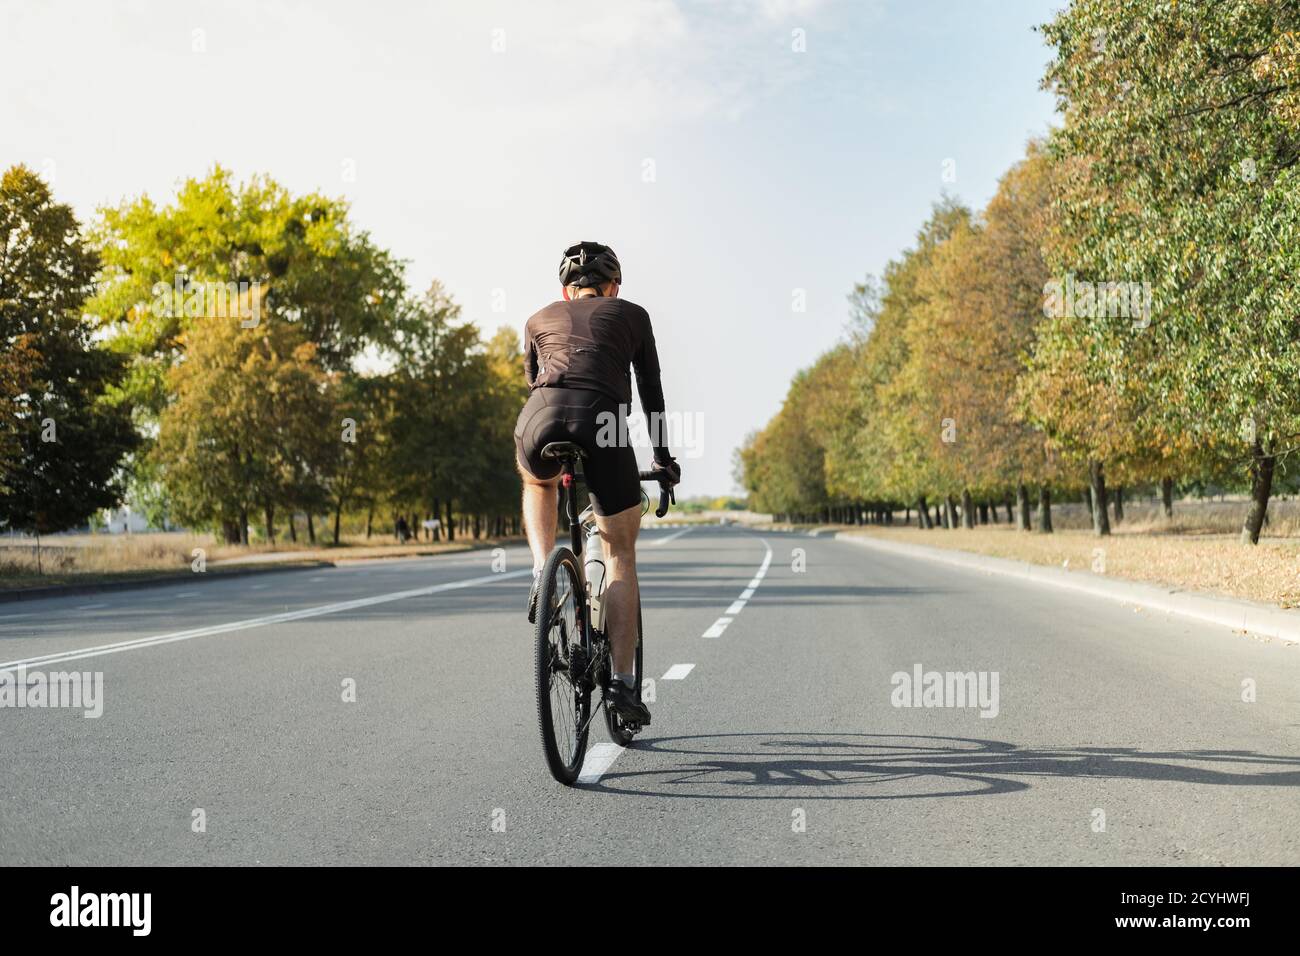 Homme sur un vélo de gravier sur la route, vue arrière. Cycliste bien équipé, qui fait du vélo moderne à l'extérieur Banque D'Images